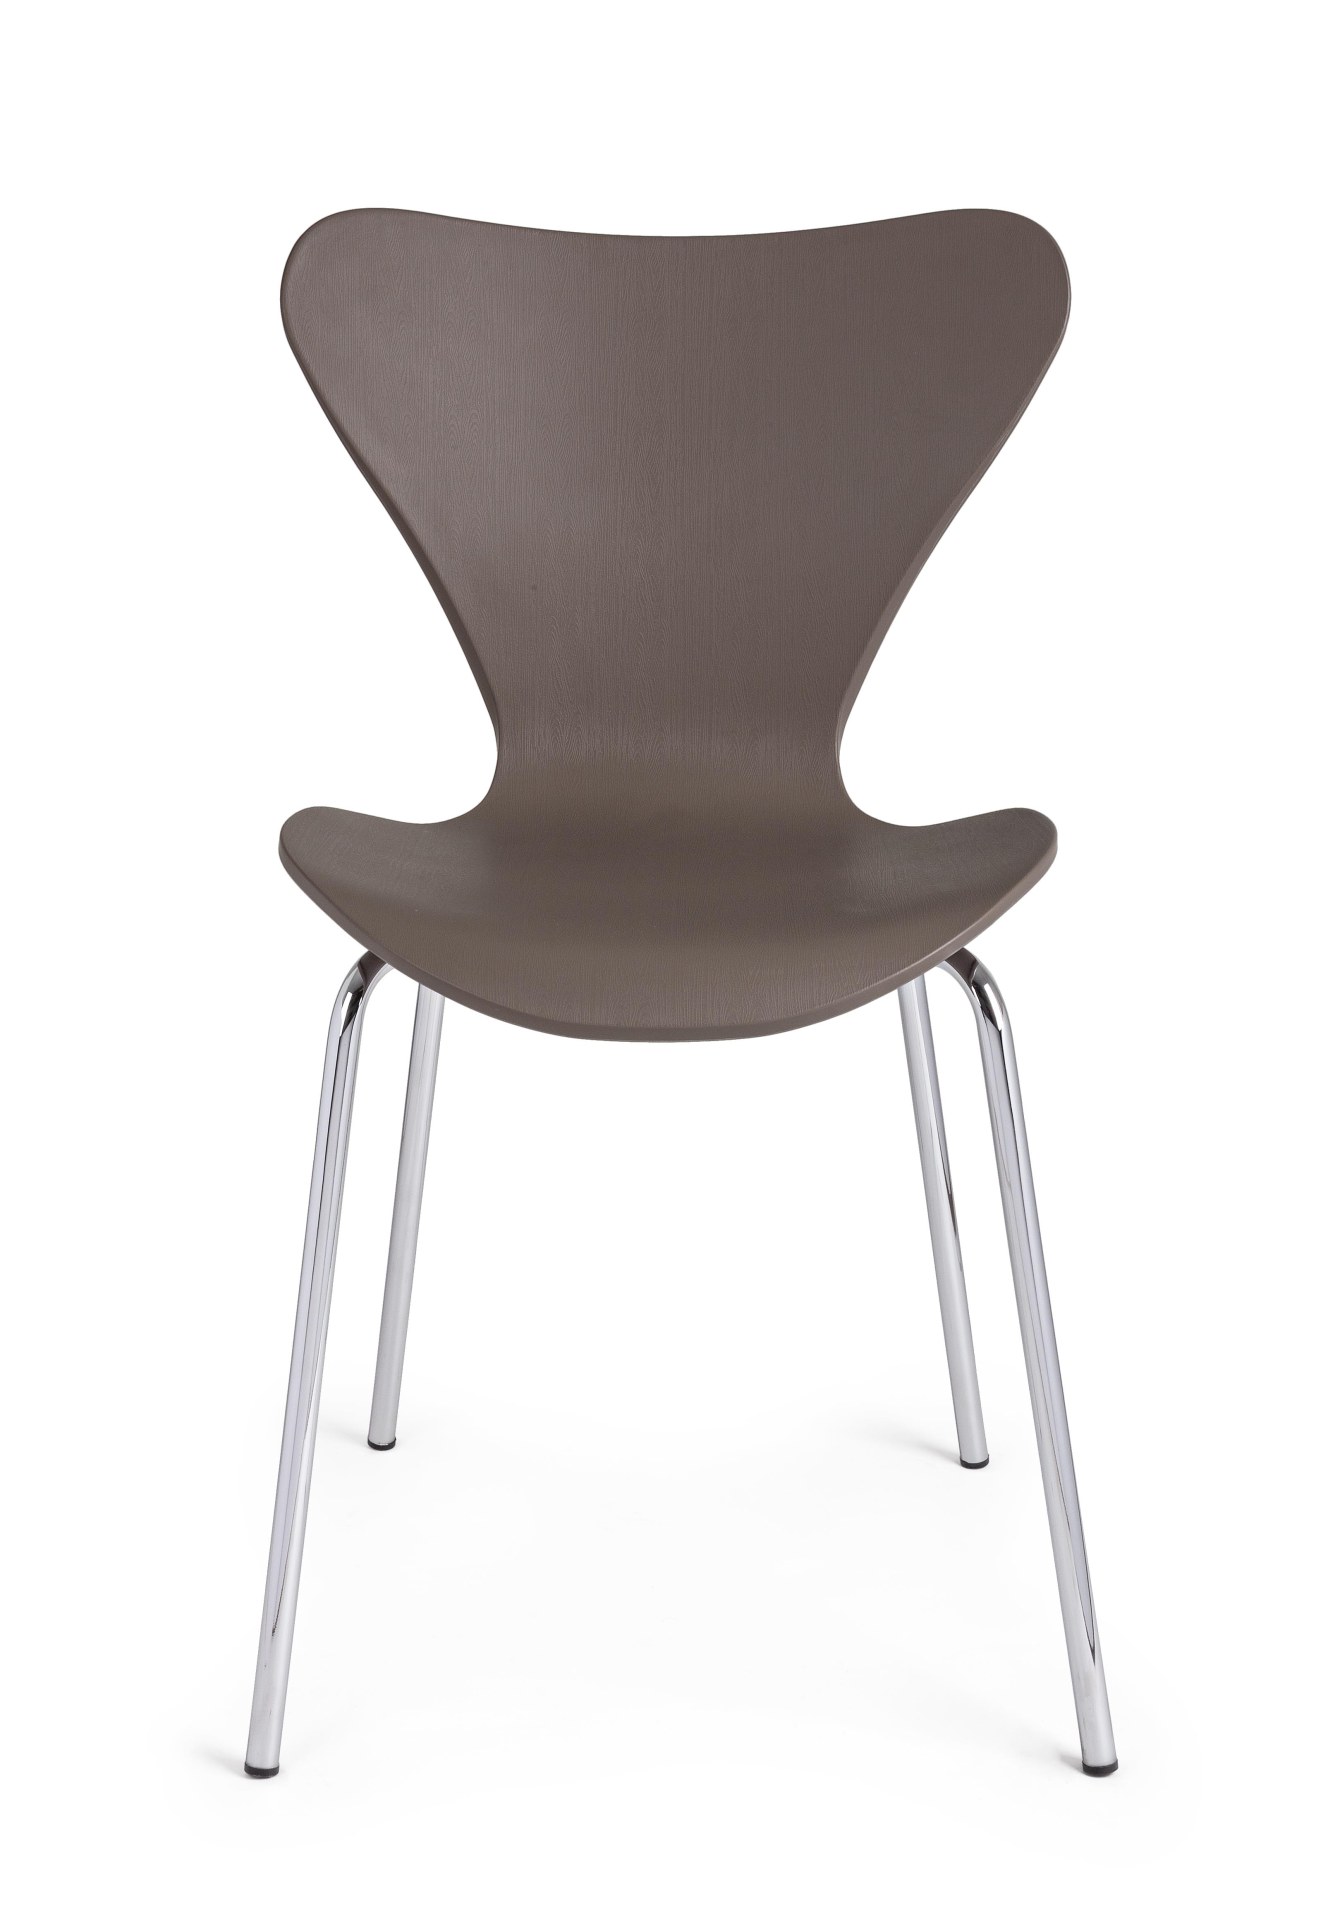 Der Stuhl Tessa überzeugt mit seinem modernem Design. Gefertigt wurde der Stuhl aus Kunststoff, welcher einen braunen Farbton besitzt. Das Gestell ist aus Metall und ist in einer silbernen Farbe. Die Sitzhöhe beträgt 45 cm.